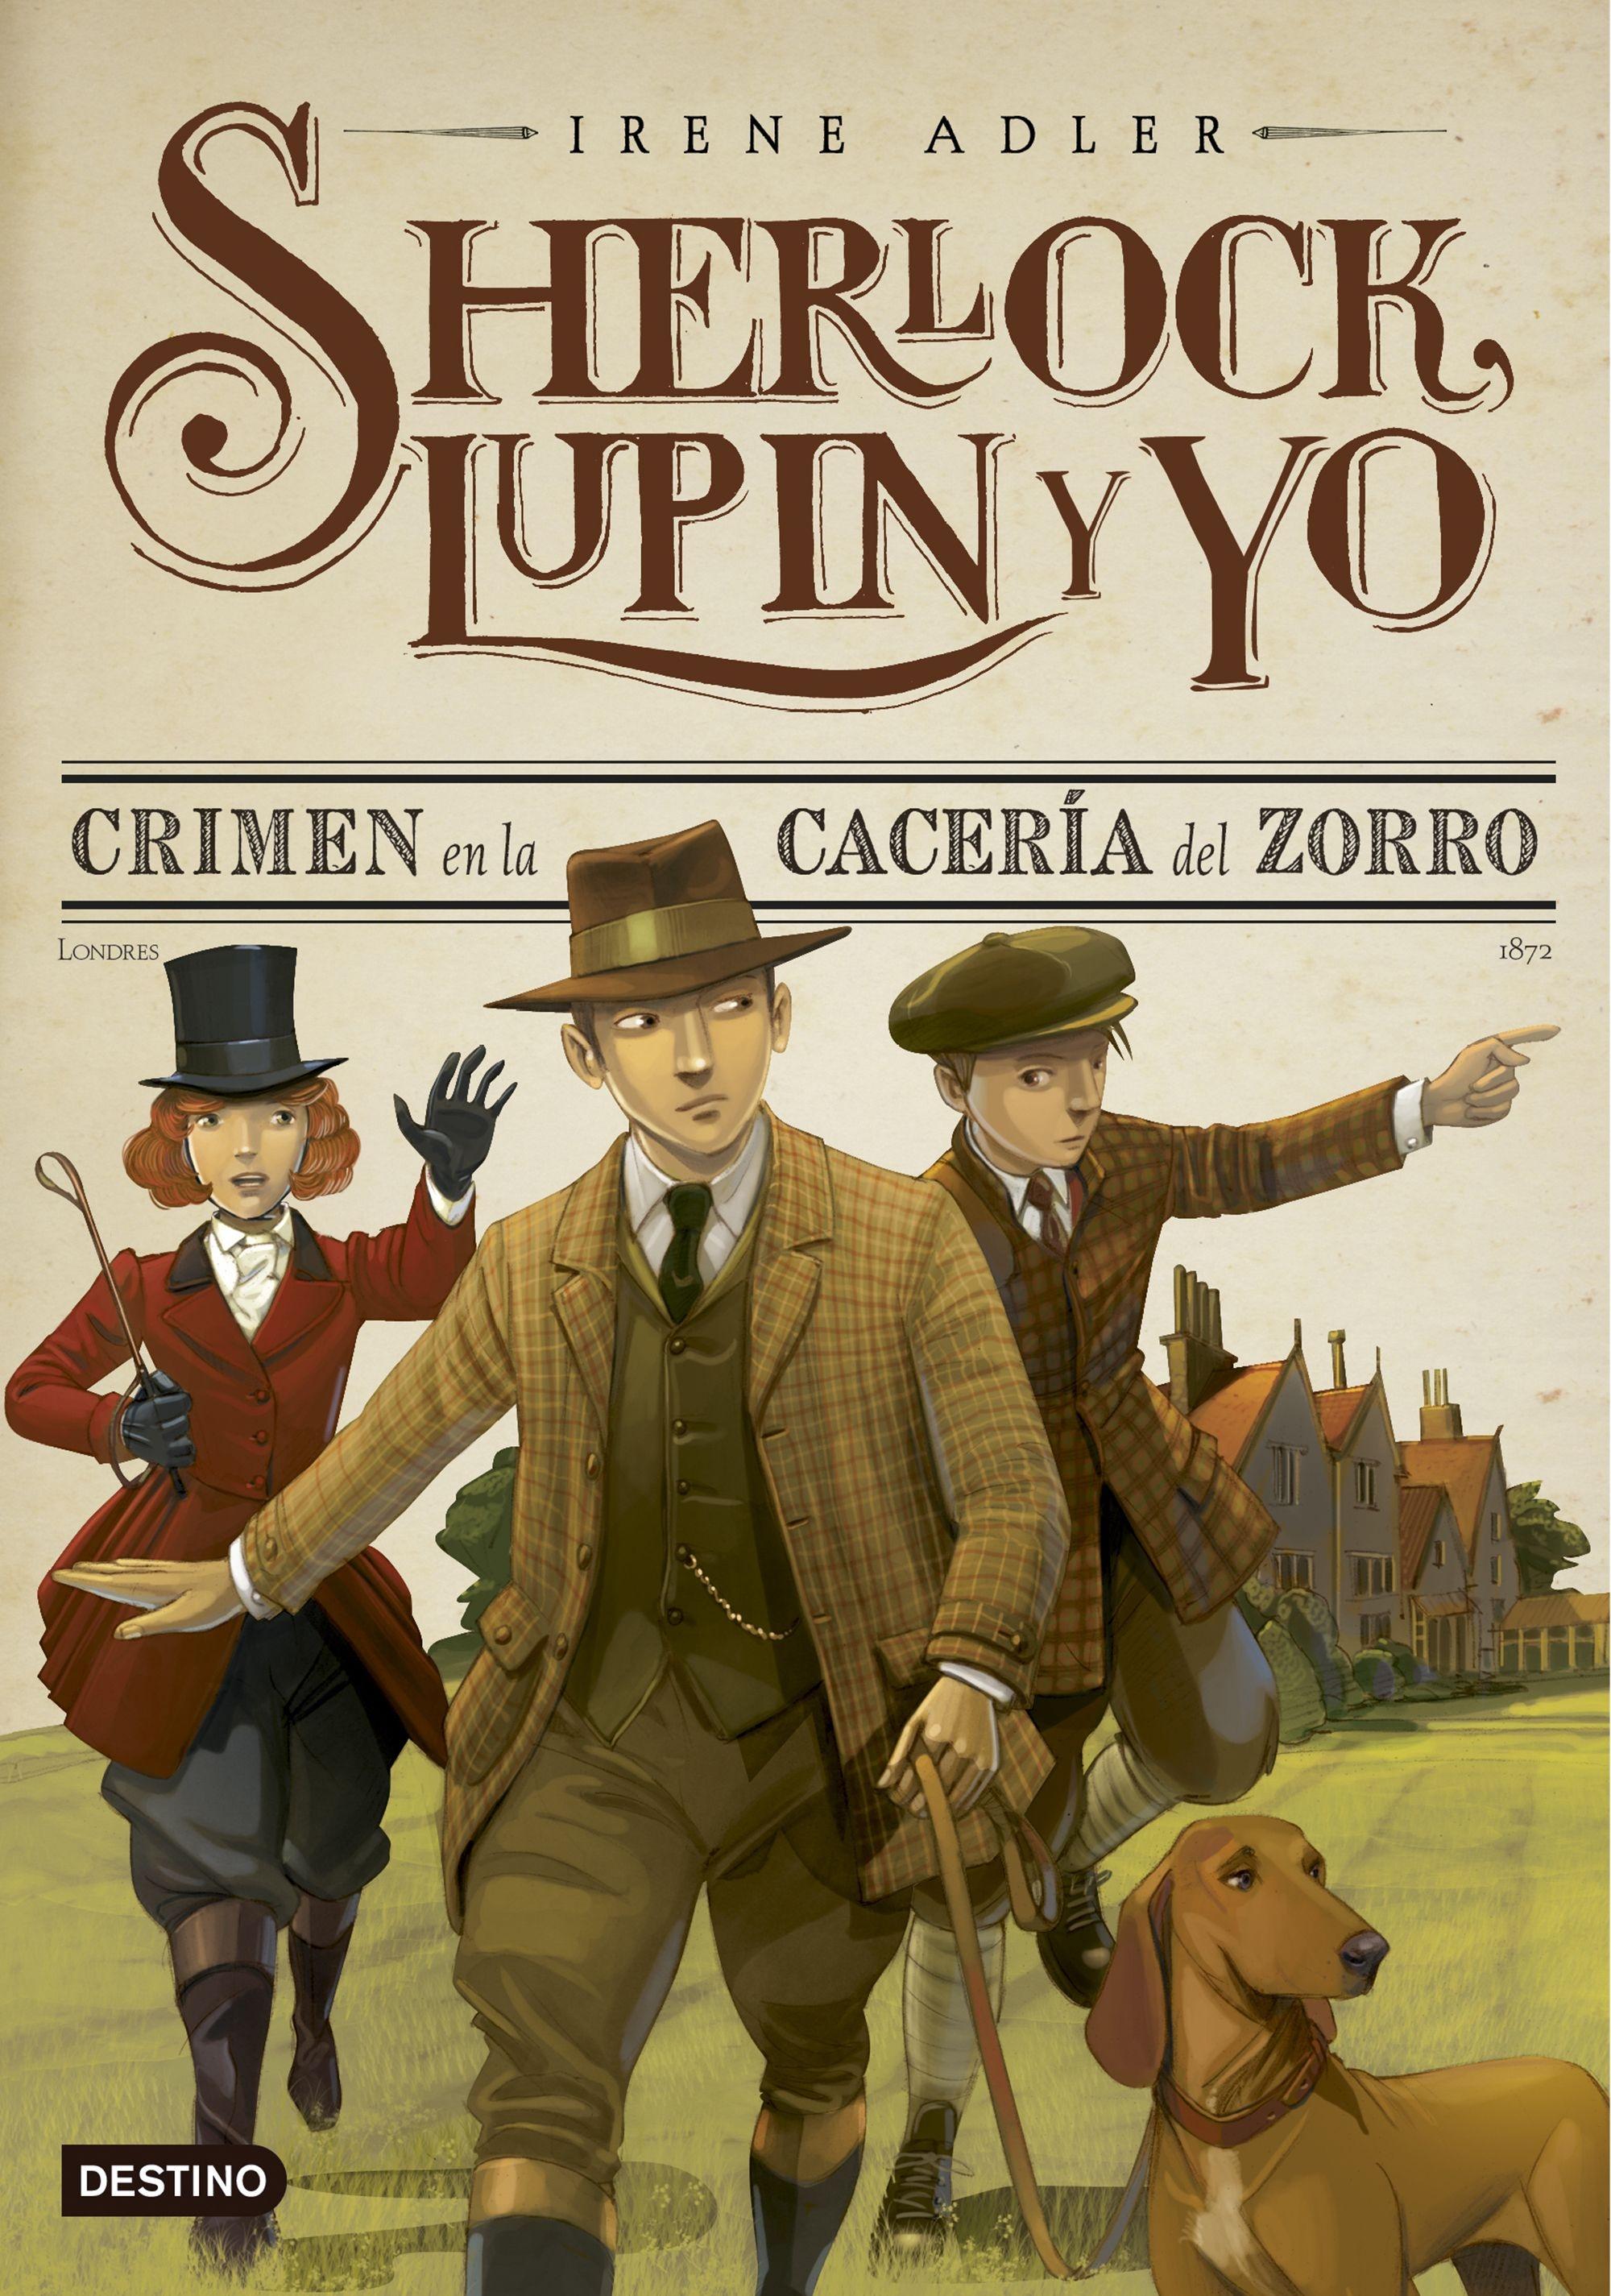 Crimen en la Cacería del Zorro "Sherlock, Lupin y yo 9"